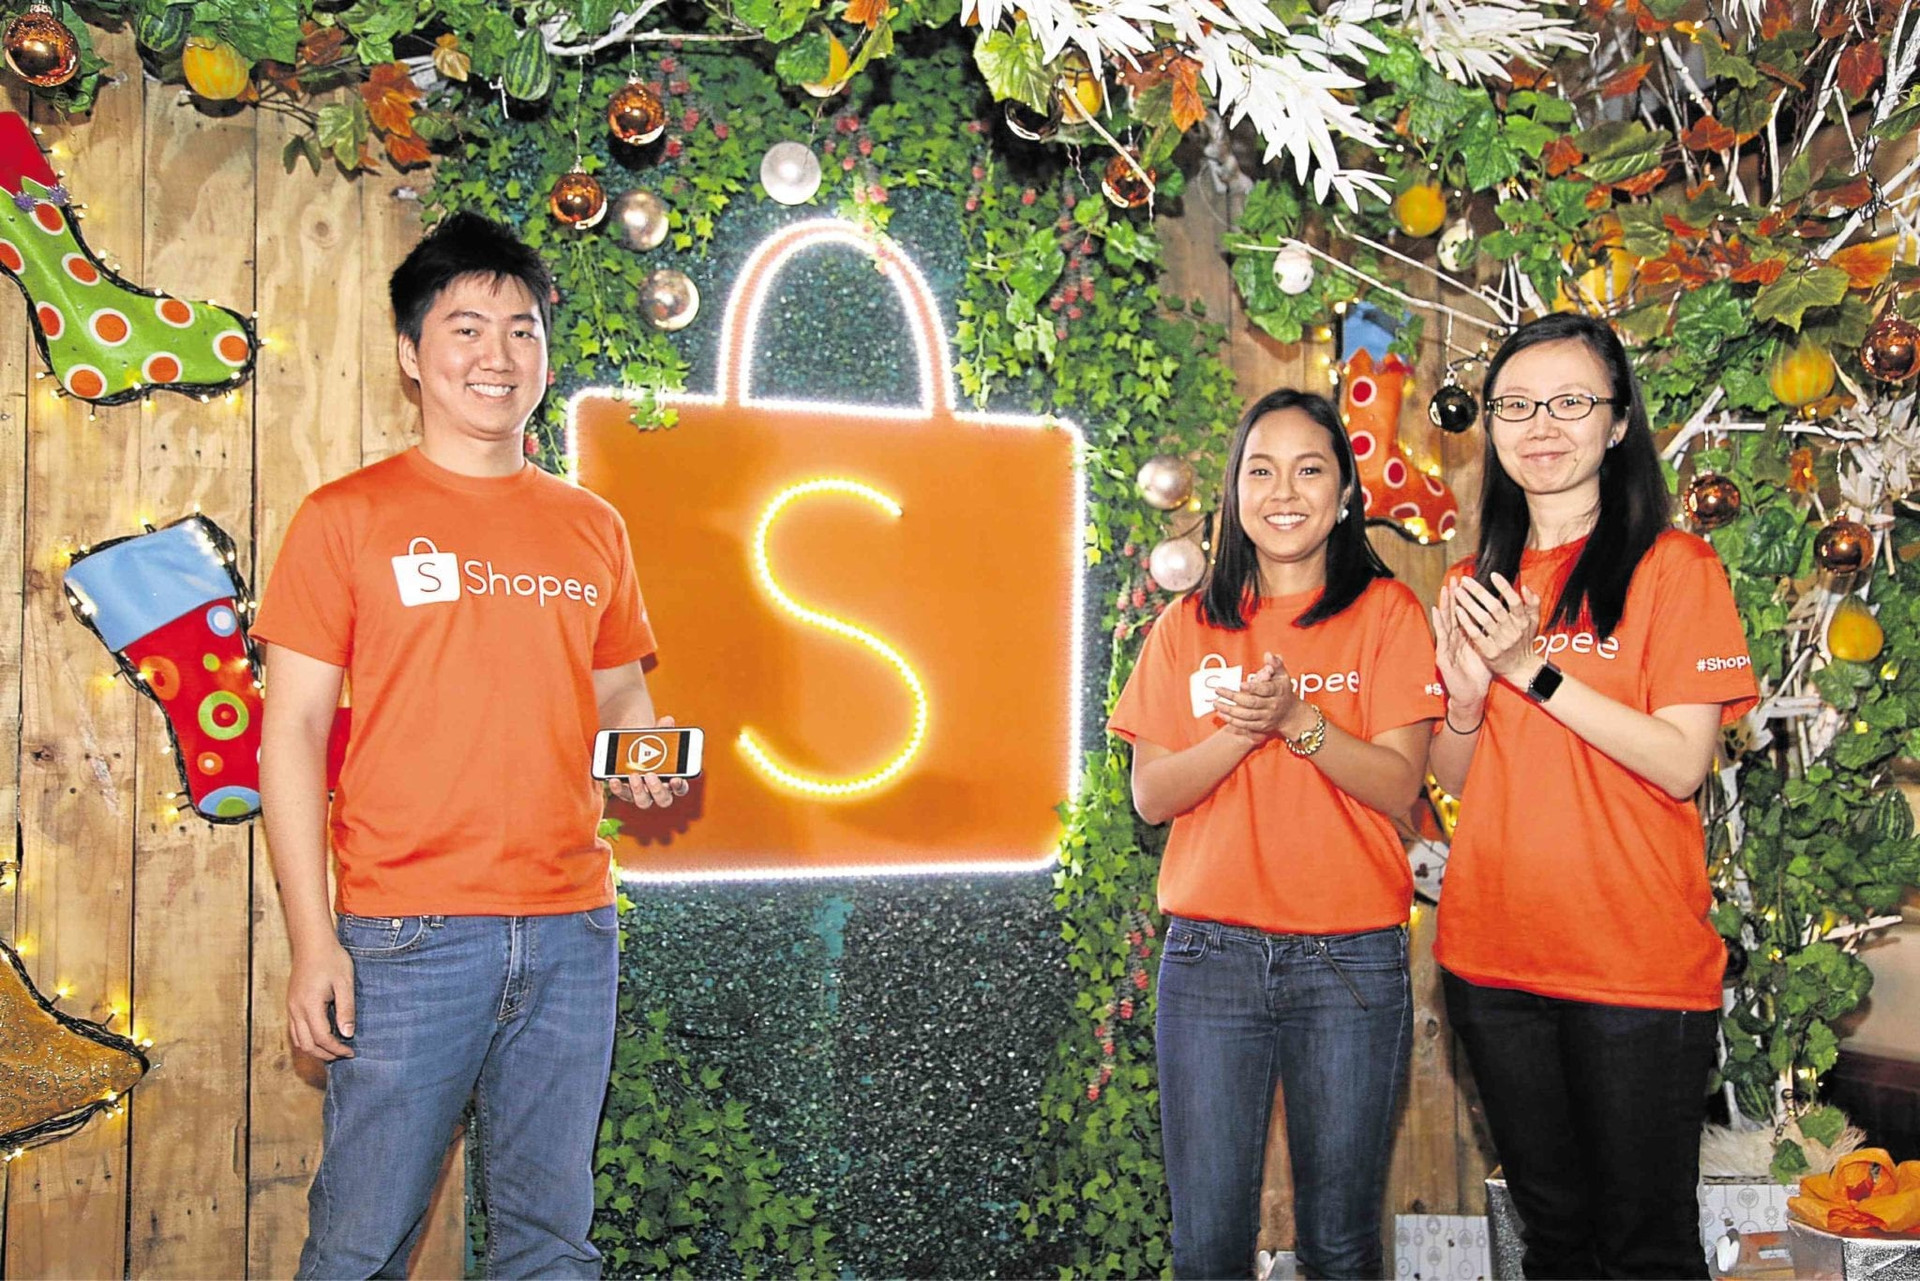  Shopee dẫn đầu danh sách top 10 doanh nghiệp thương mại điện tử tại Việt Nam  - Ảnh 1.